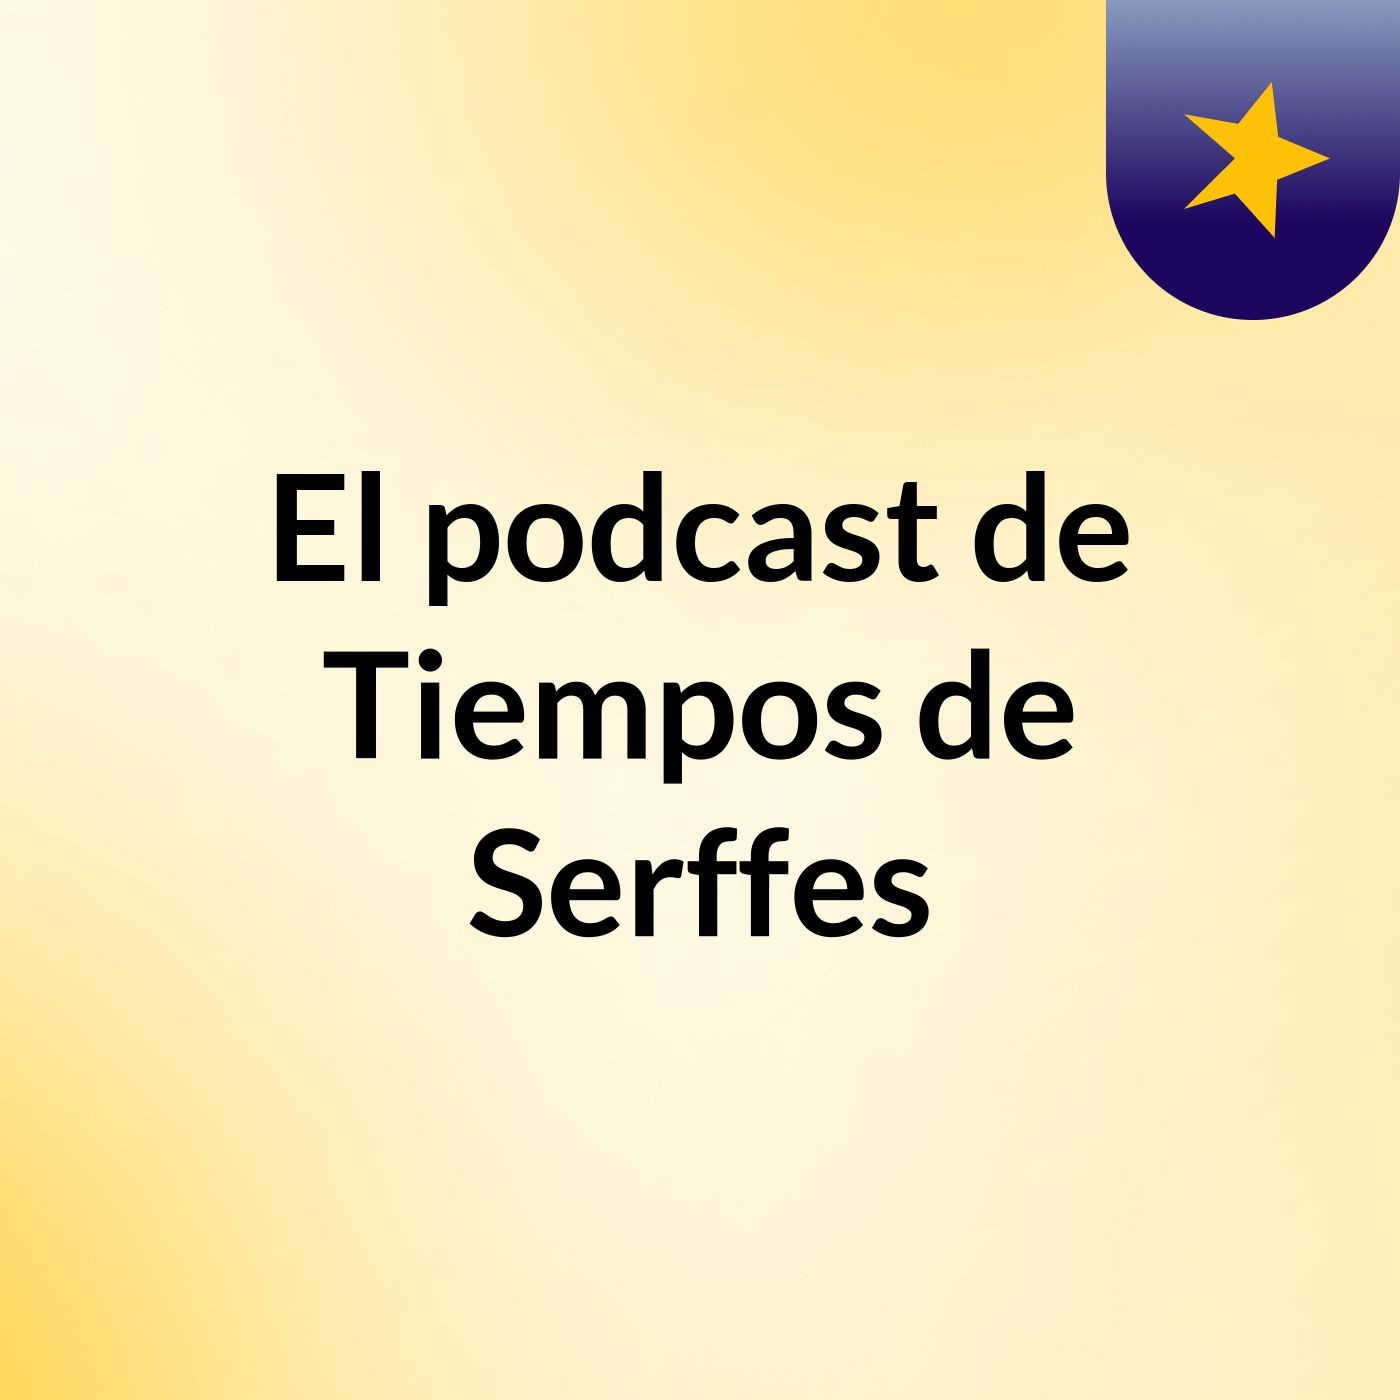 Episodio 24 - El podcast de Tiempos de Serffes